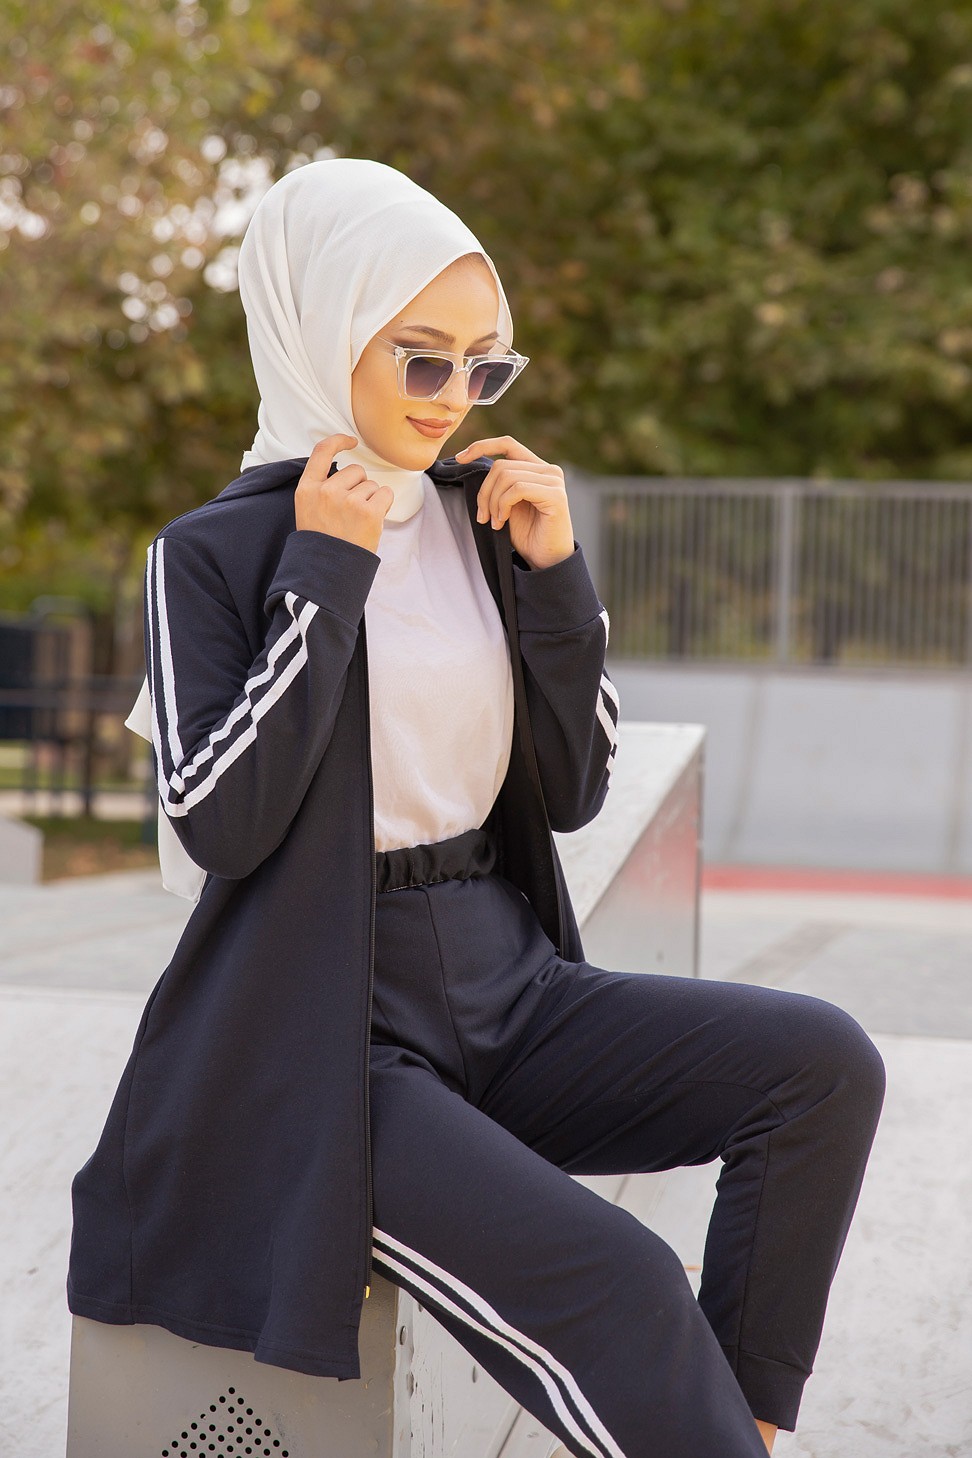 Survêtement tricolore à capuche imprimé Breathe (Sportswear femme voilée)  - Couleur Bleu de Chanel, noir et blanc